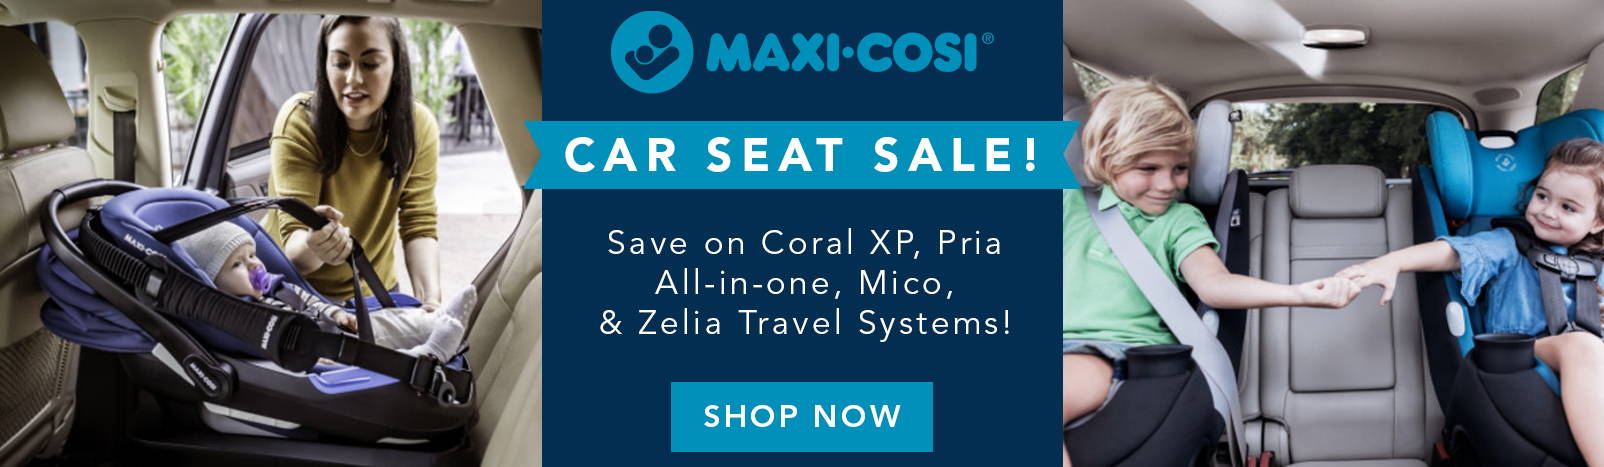 Maxi-Cosi Car Seat Sale